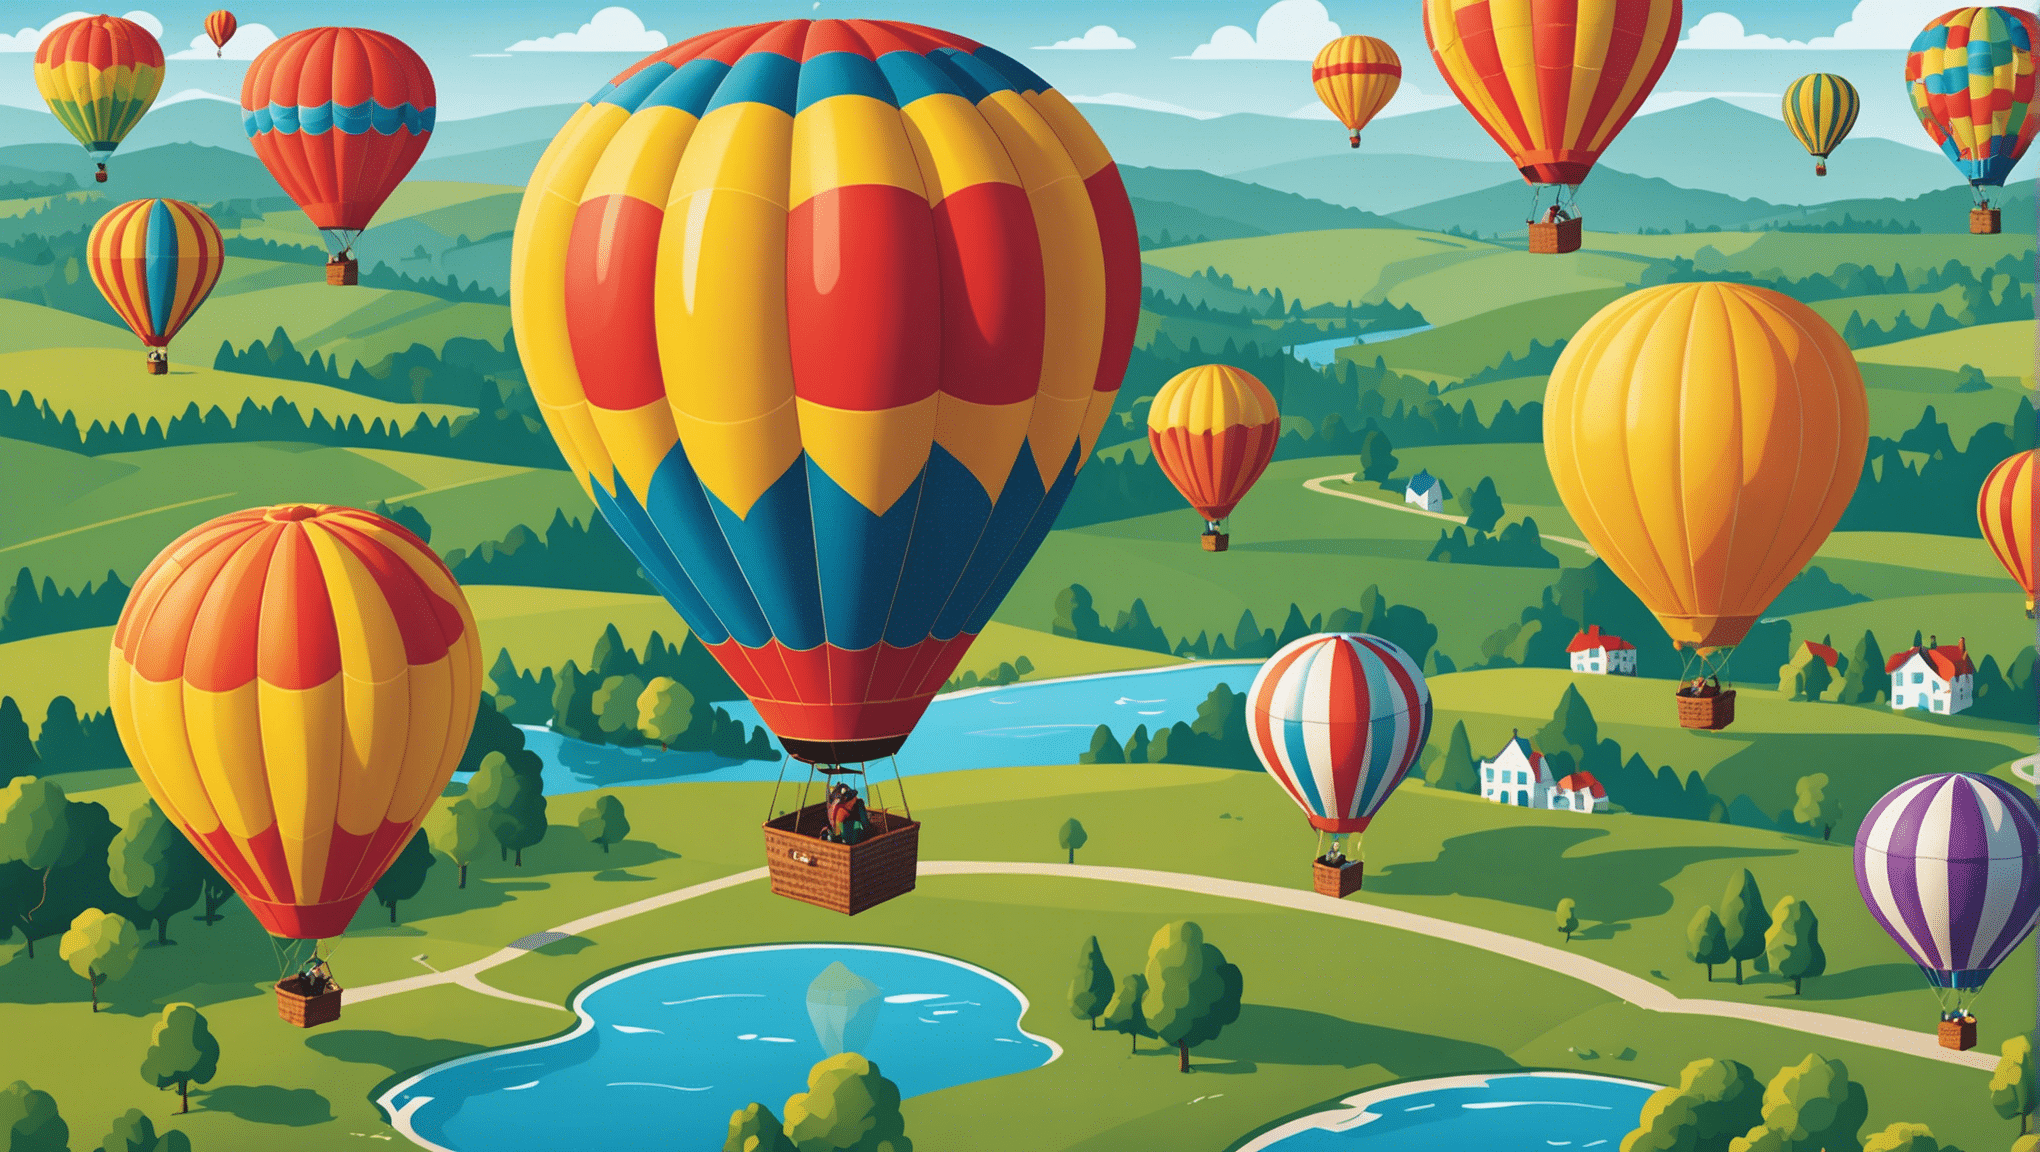 Entdecken Sie unvergessliche Erlebnisse bei Heißluftballonfahrten mit atemberaubender Aussicht. Buchen Sie jetzt Ihr Abenteuer!